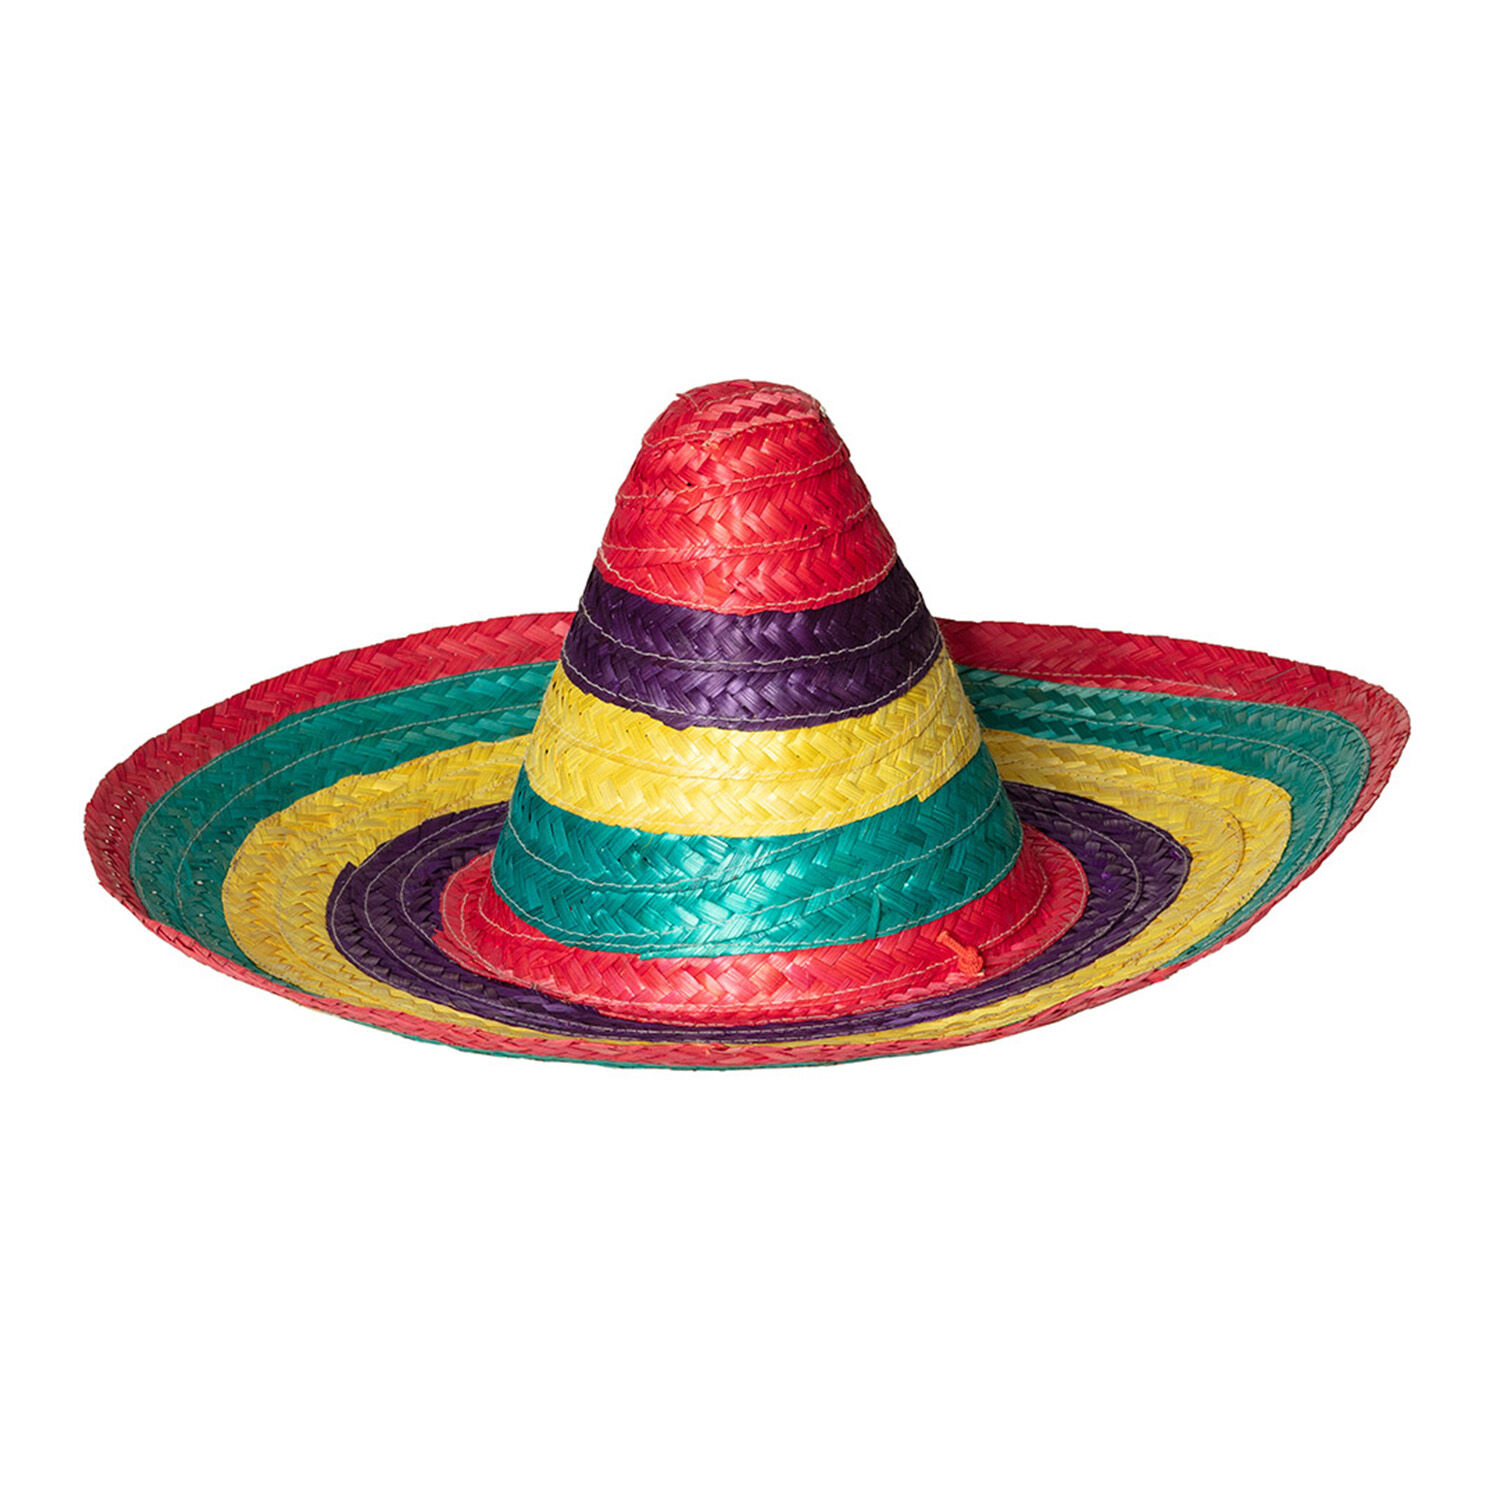 NEU Sombrero bunt, ca. 49cm, auch für Kinder geeignet